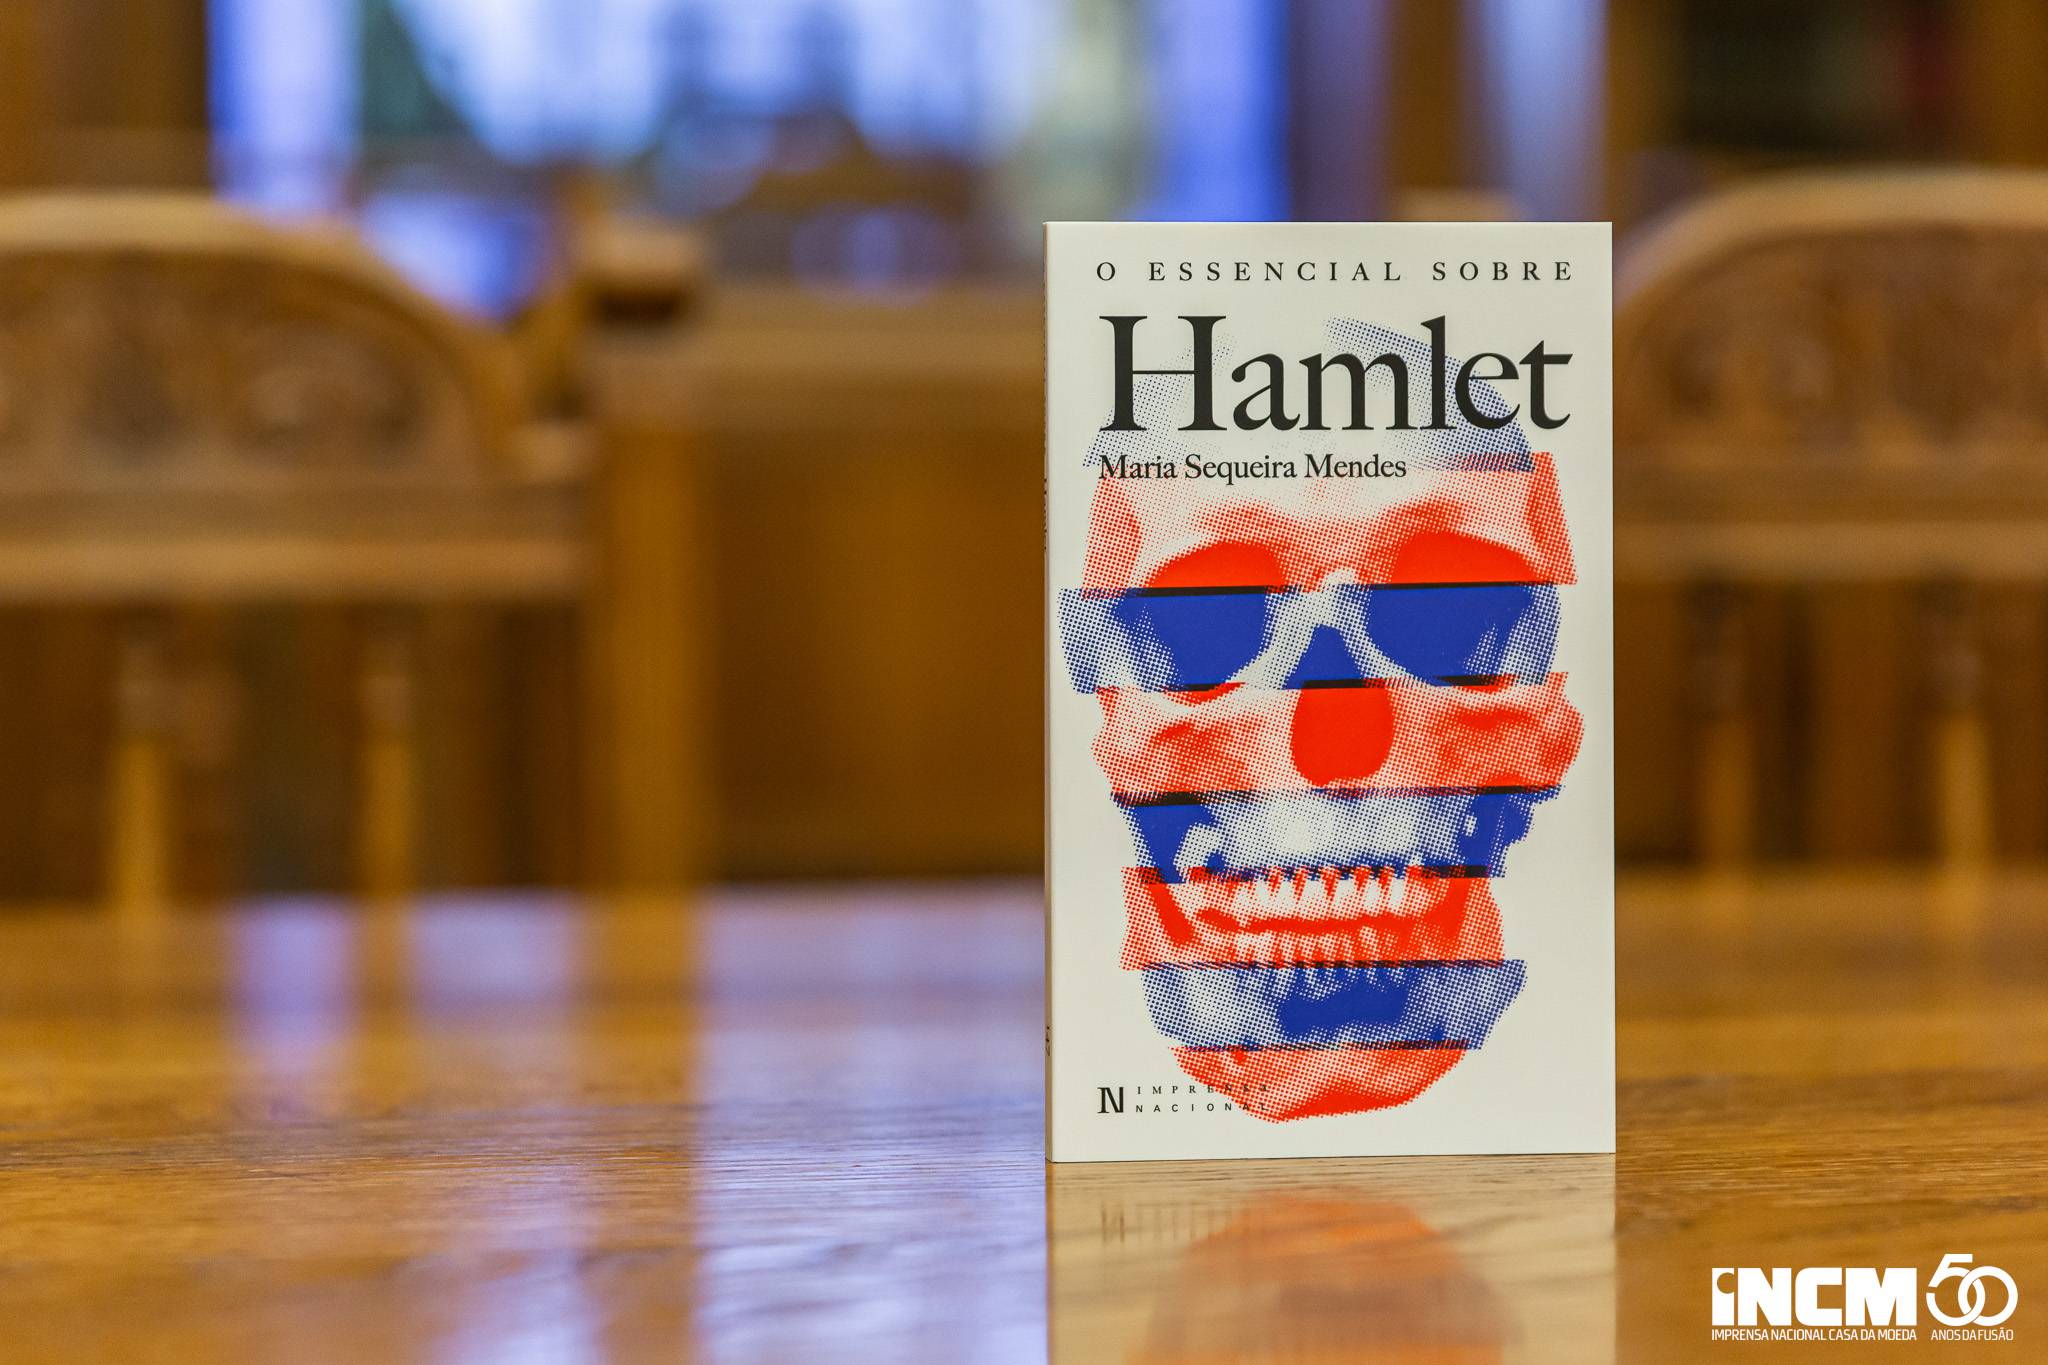 Apresentado O Essencial sobre Hamlet, de Maria Sequeira Mendes, na Biblioteca da Imprensa Nacional